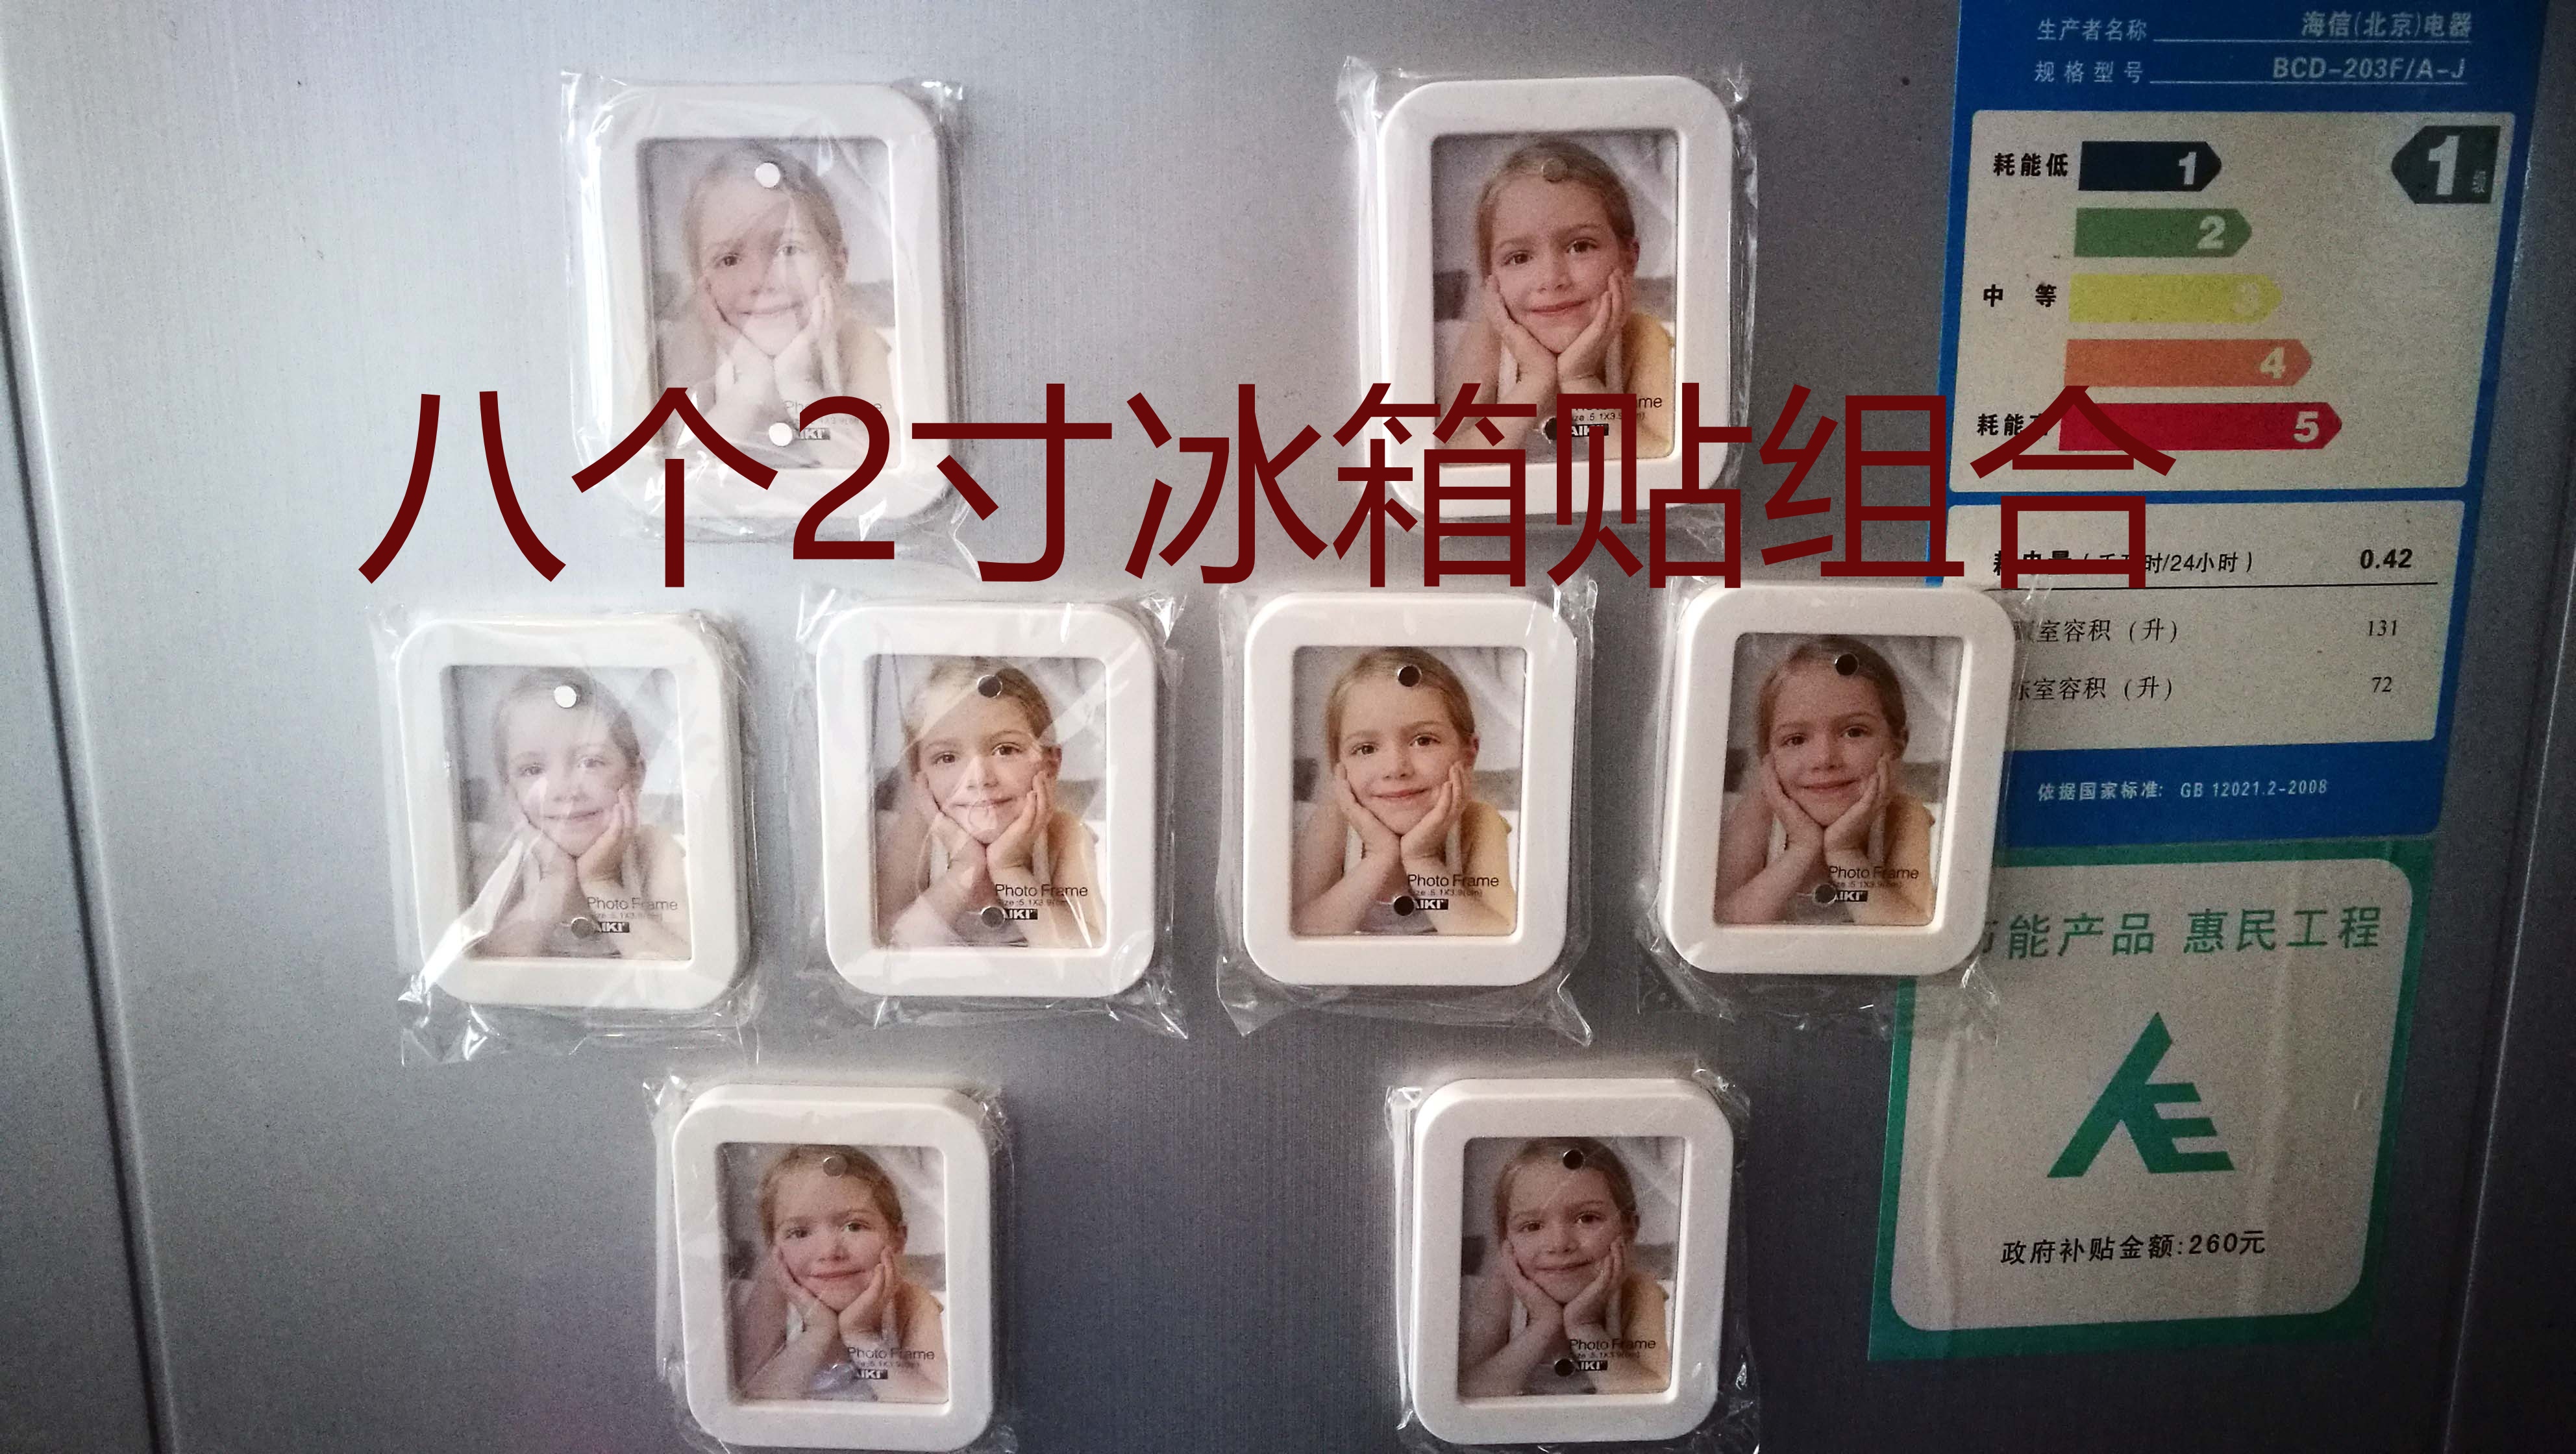 香港格林相框 2寸 3寸大头贴 钱包照 冰箱贴 照片墙 可放拍立得照